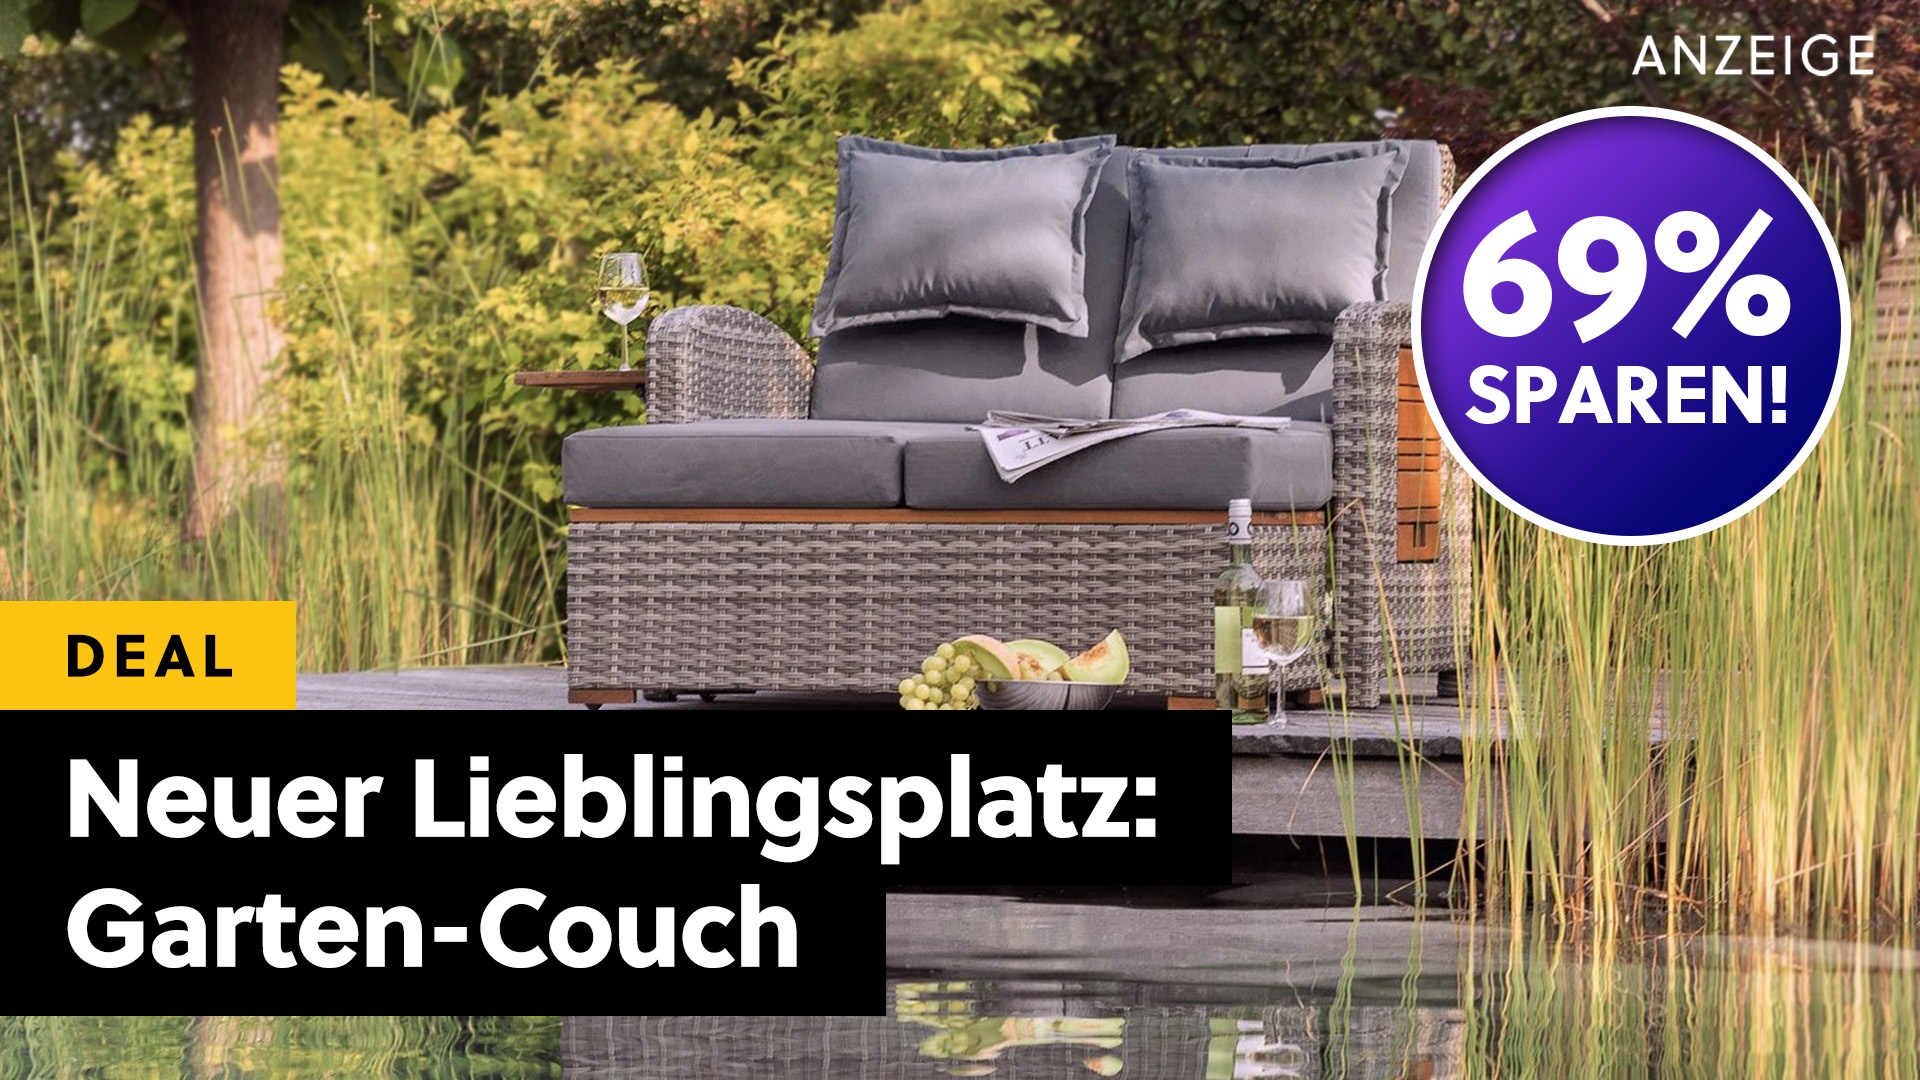 Traum-Lounge für den Garten jetzt zum Traum-Preis bei LIDL! Diese Couch für draußen ist praktisch UND sieht gut aus